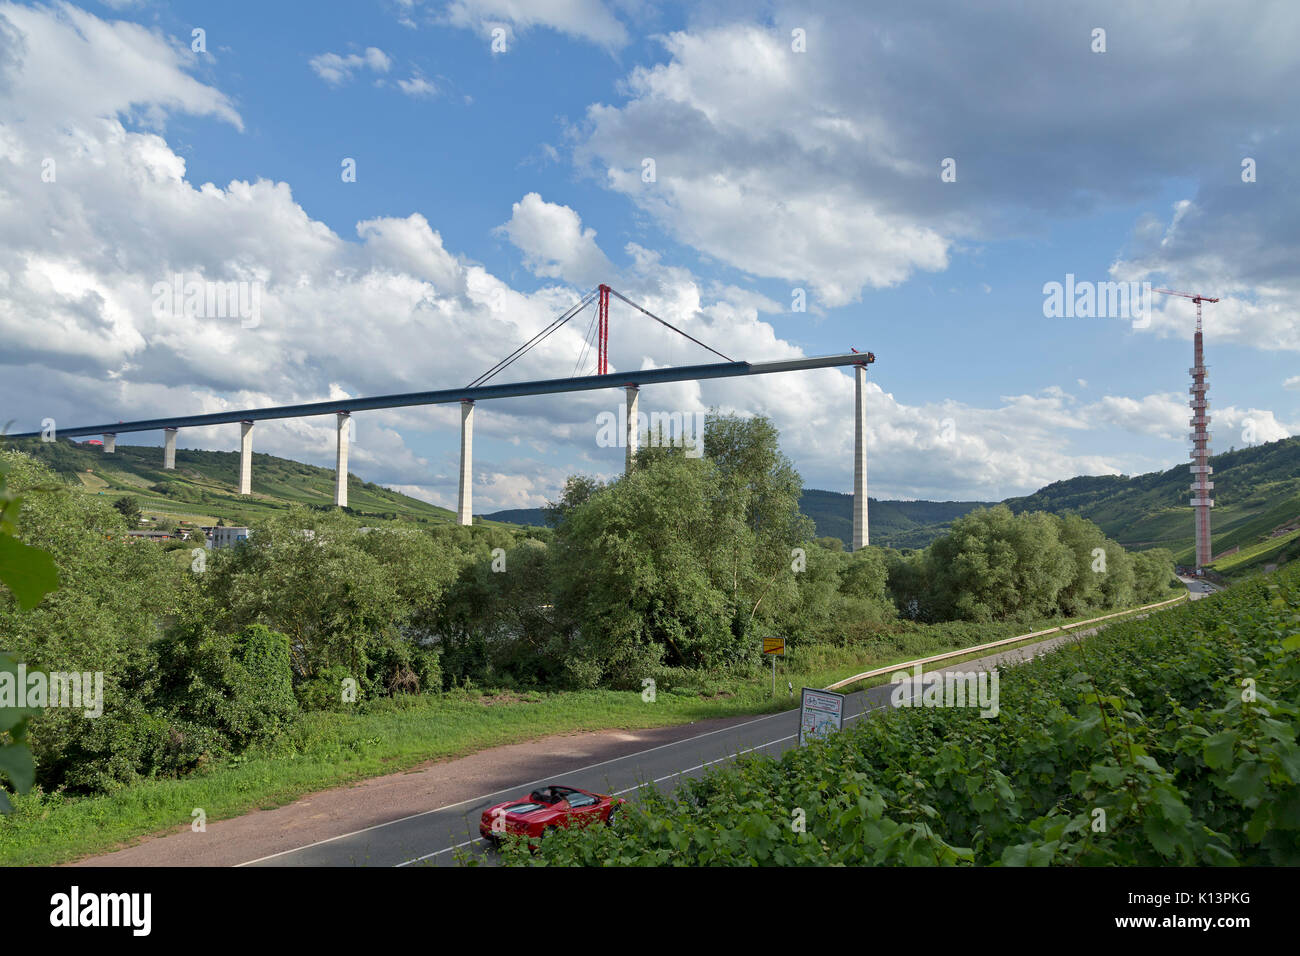 Baustelle Mosel Hochmoselbruecke (Hohe Brücke) zwischen Uerzig und Zeltingen-Rachtig, Mosel, Deutschland Stockfoto